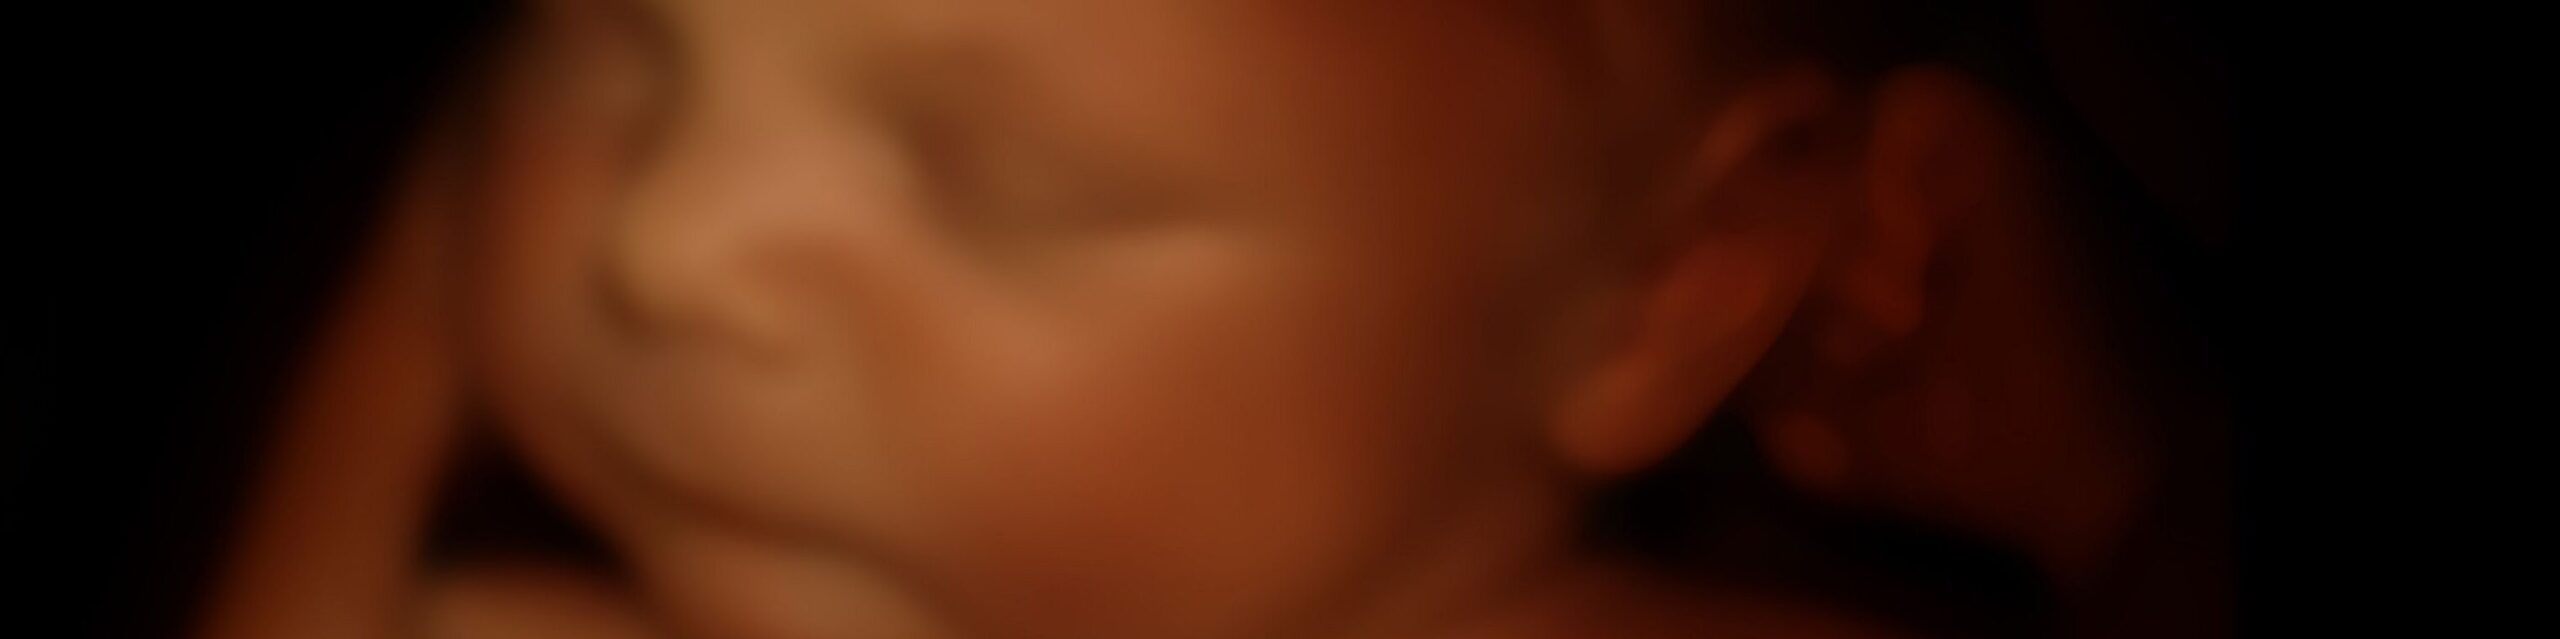 ungeborenes Baby im Mutterleib